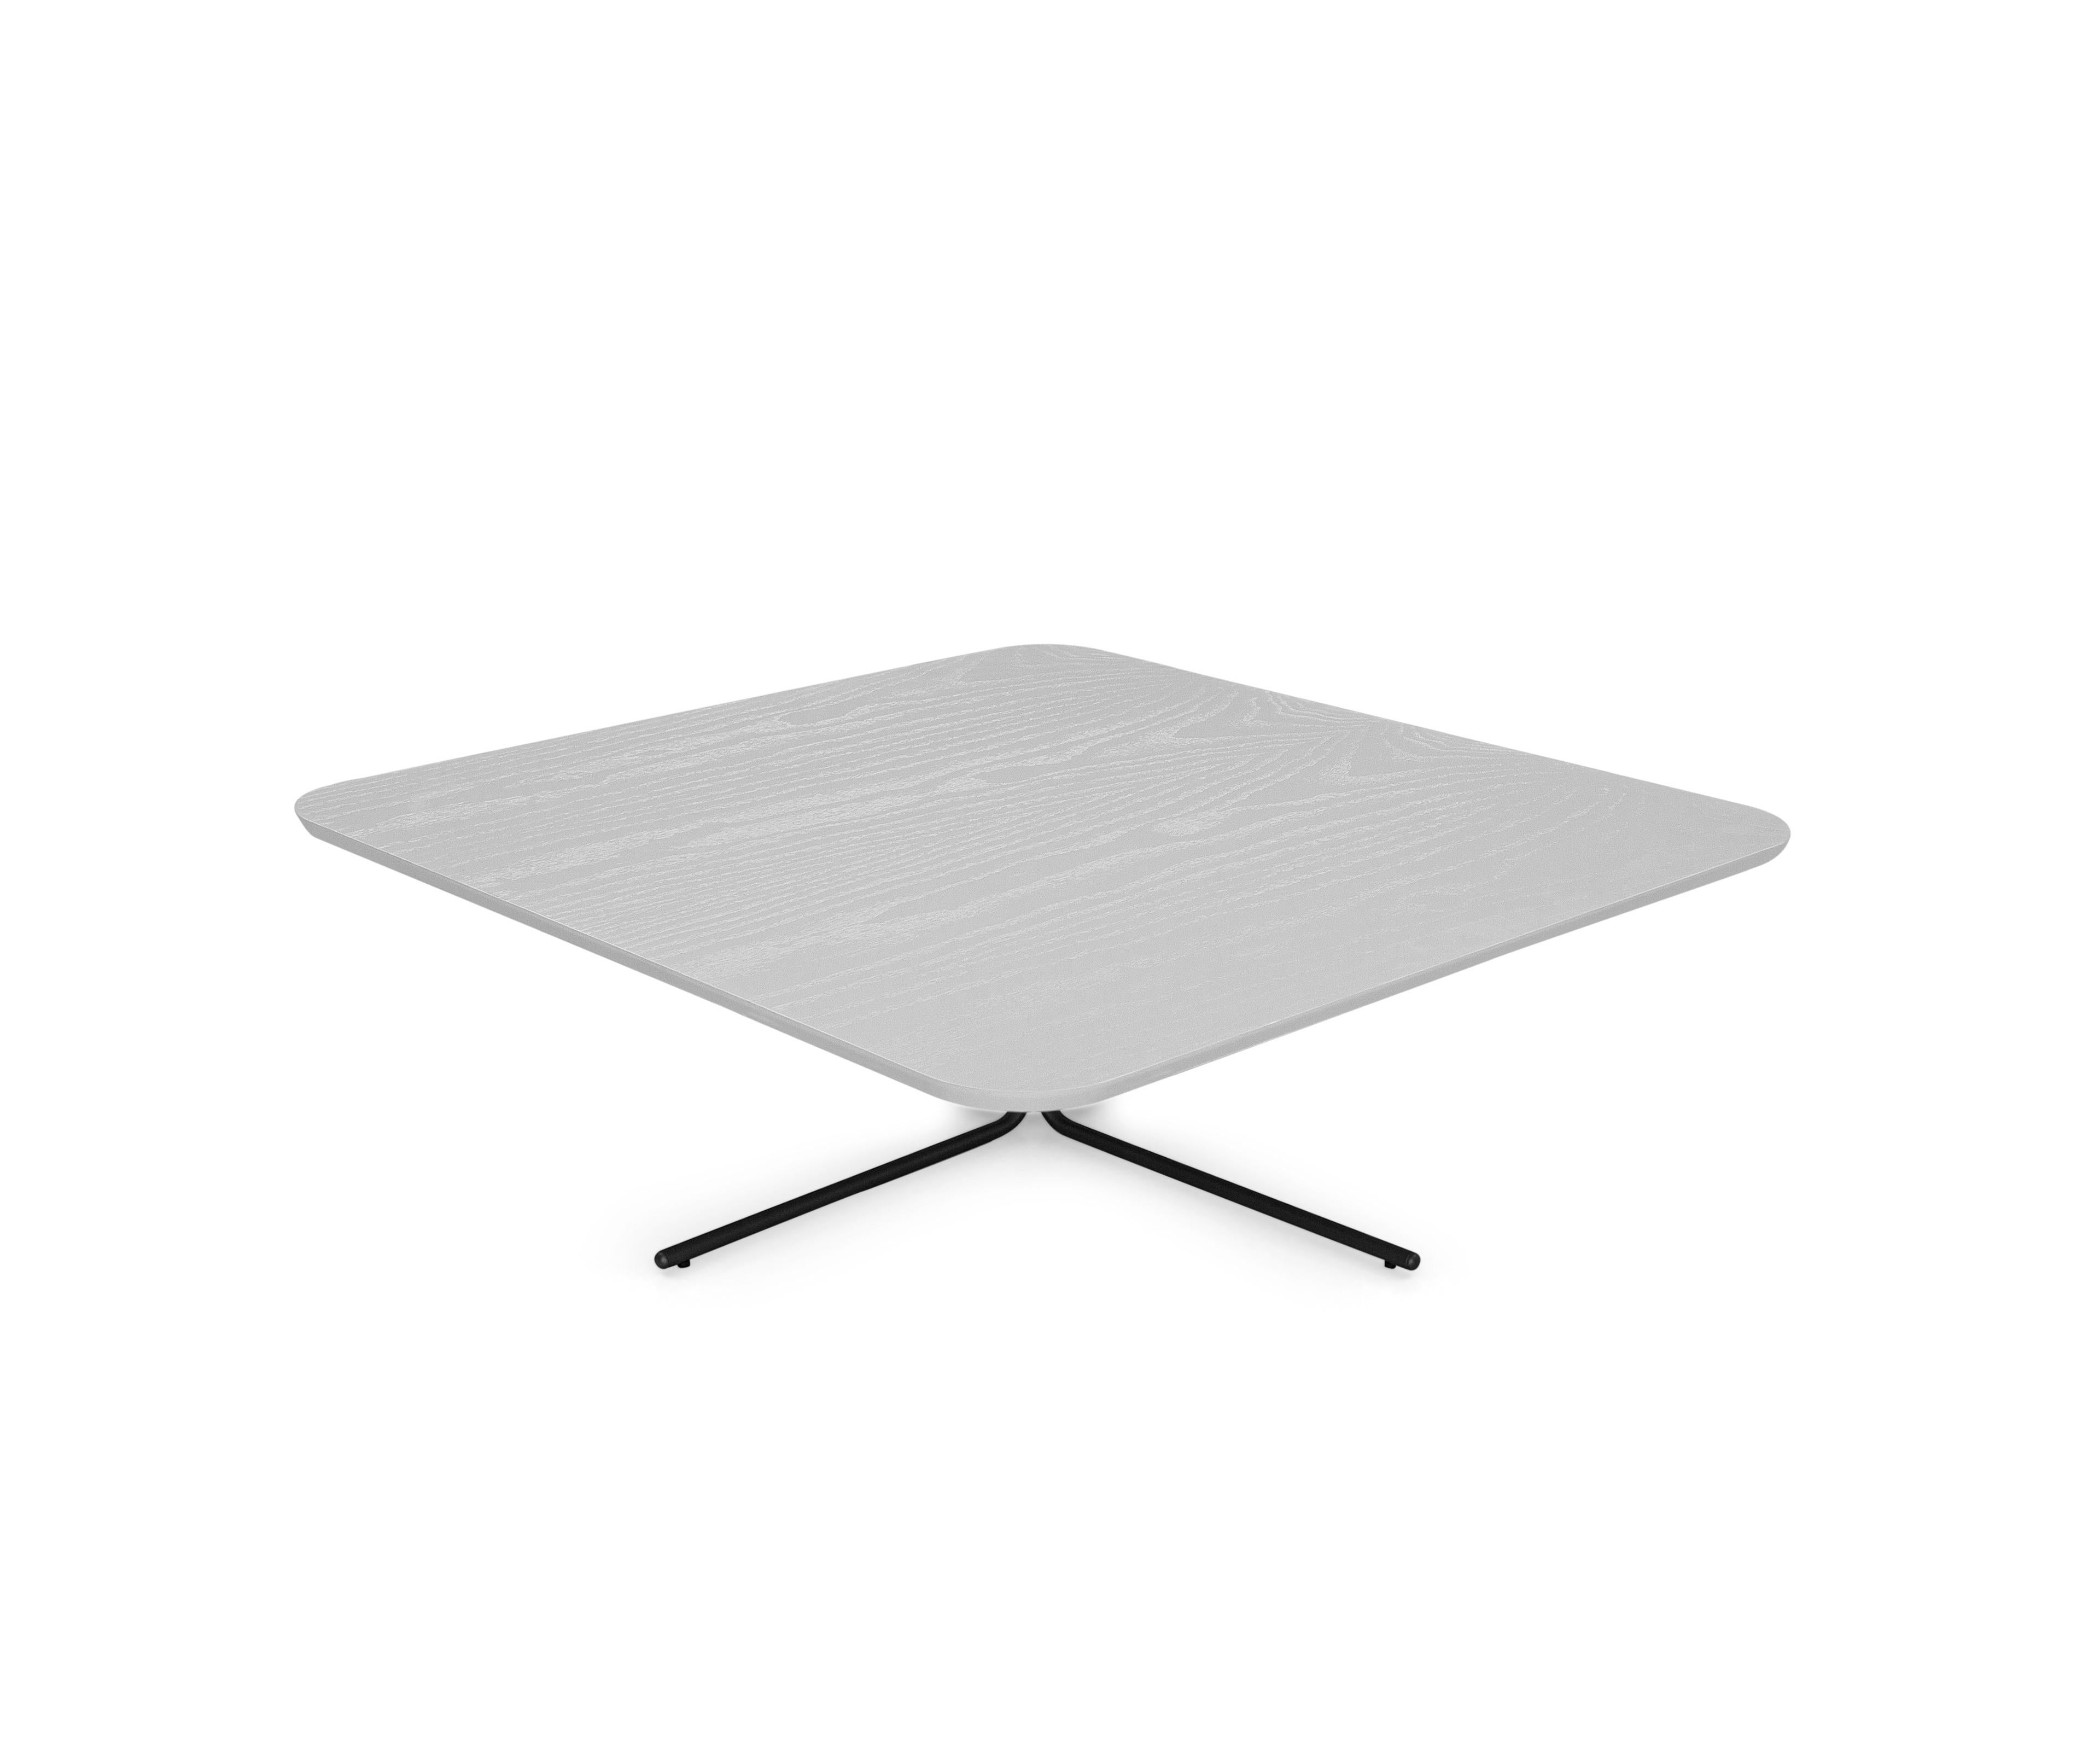 Unterstützung Tabellen auf der Grundlage von Aluminium und Top in MDF 20mm. Es ist der perfekte Hauch von Leichtigkeit für Ihr Zuhause. Wird auch als Set verkauft.